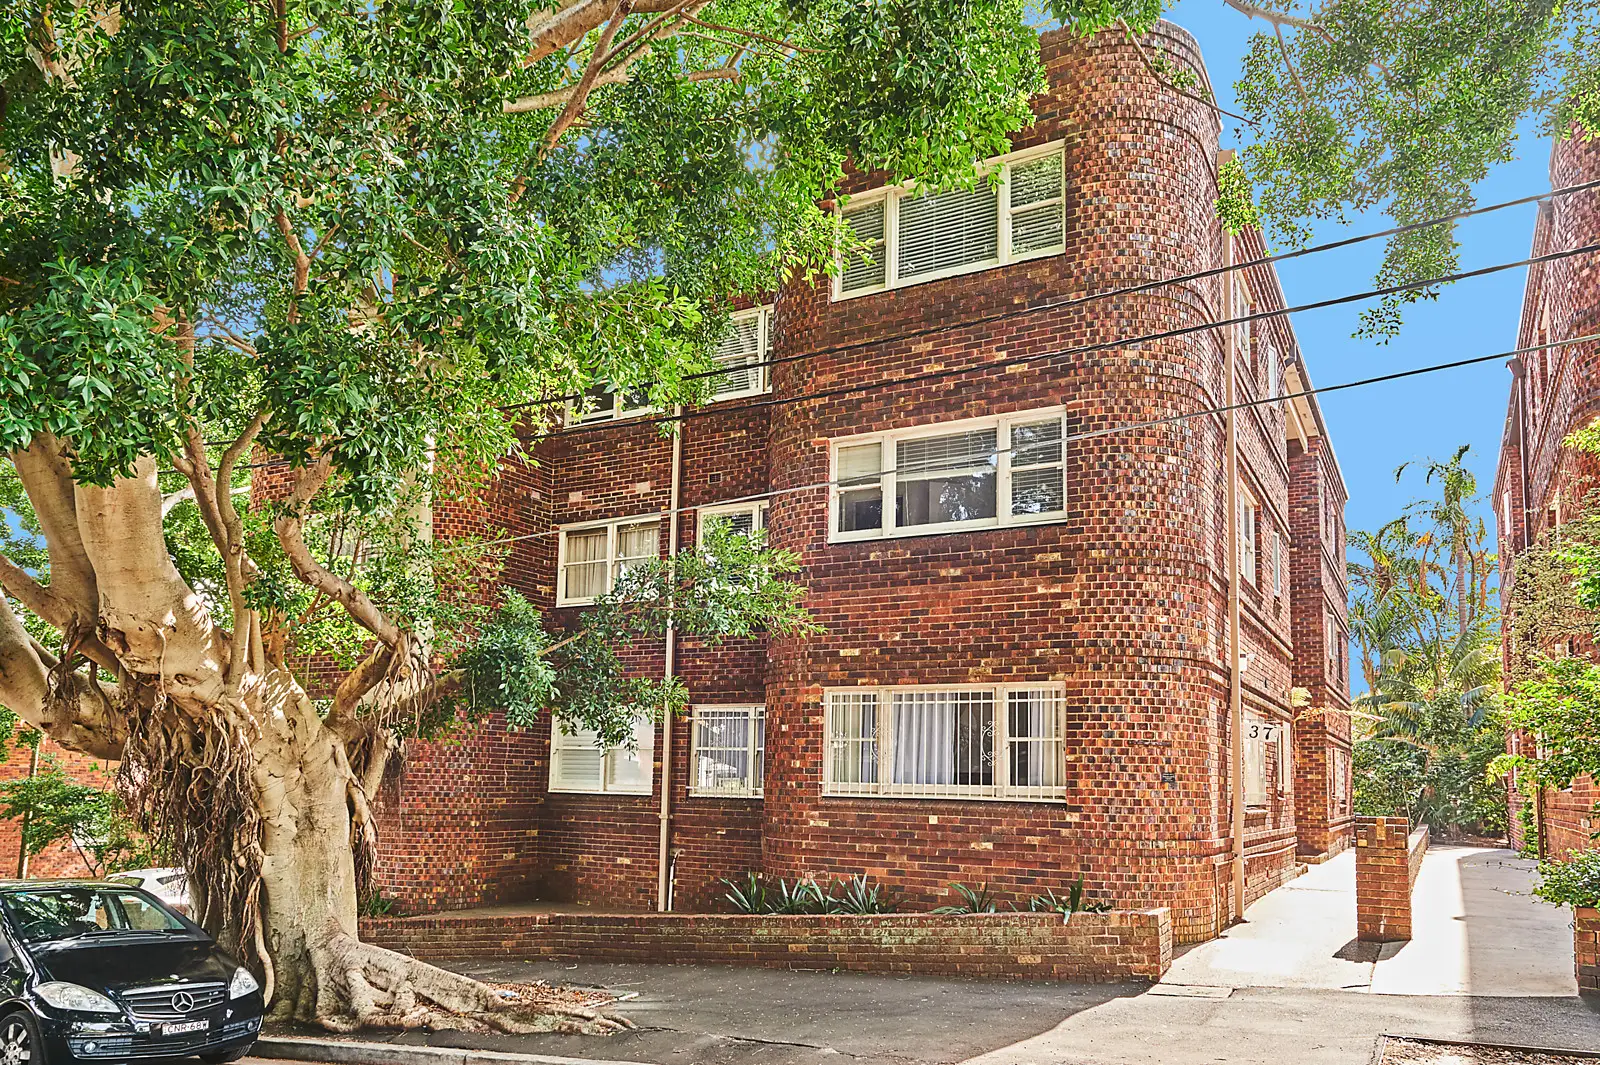 2/37 Nelson Street, Woollahra Sold by Bradfield Badgerfox - image 1